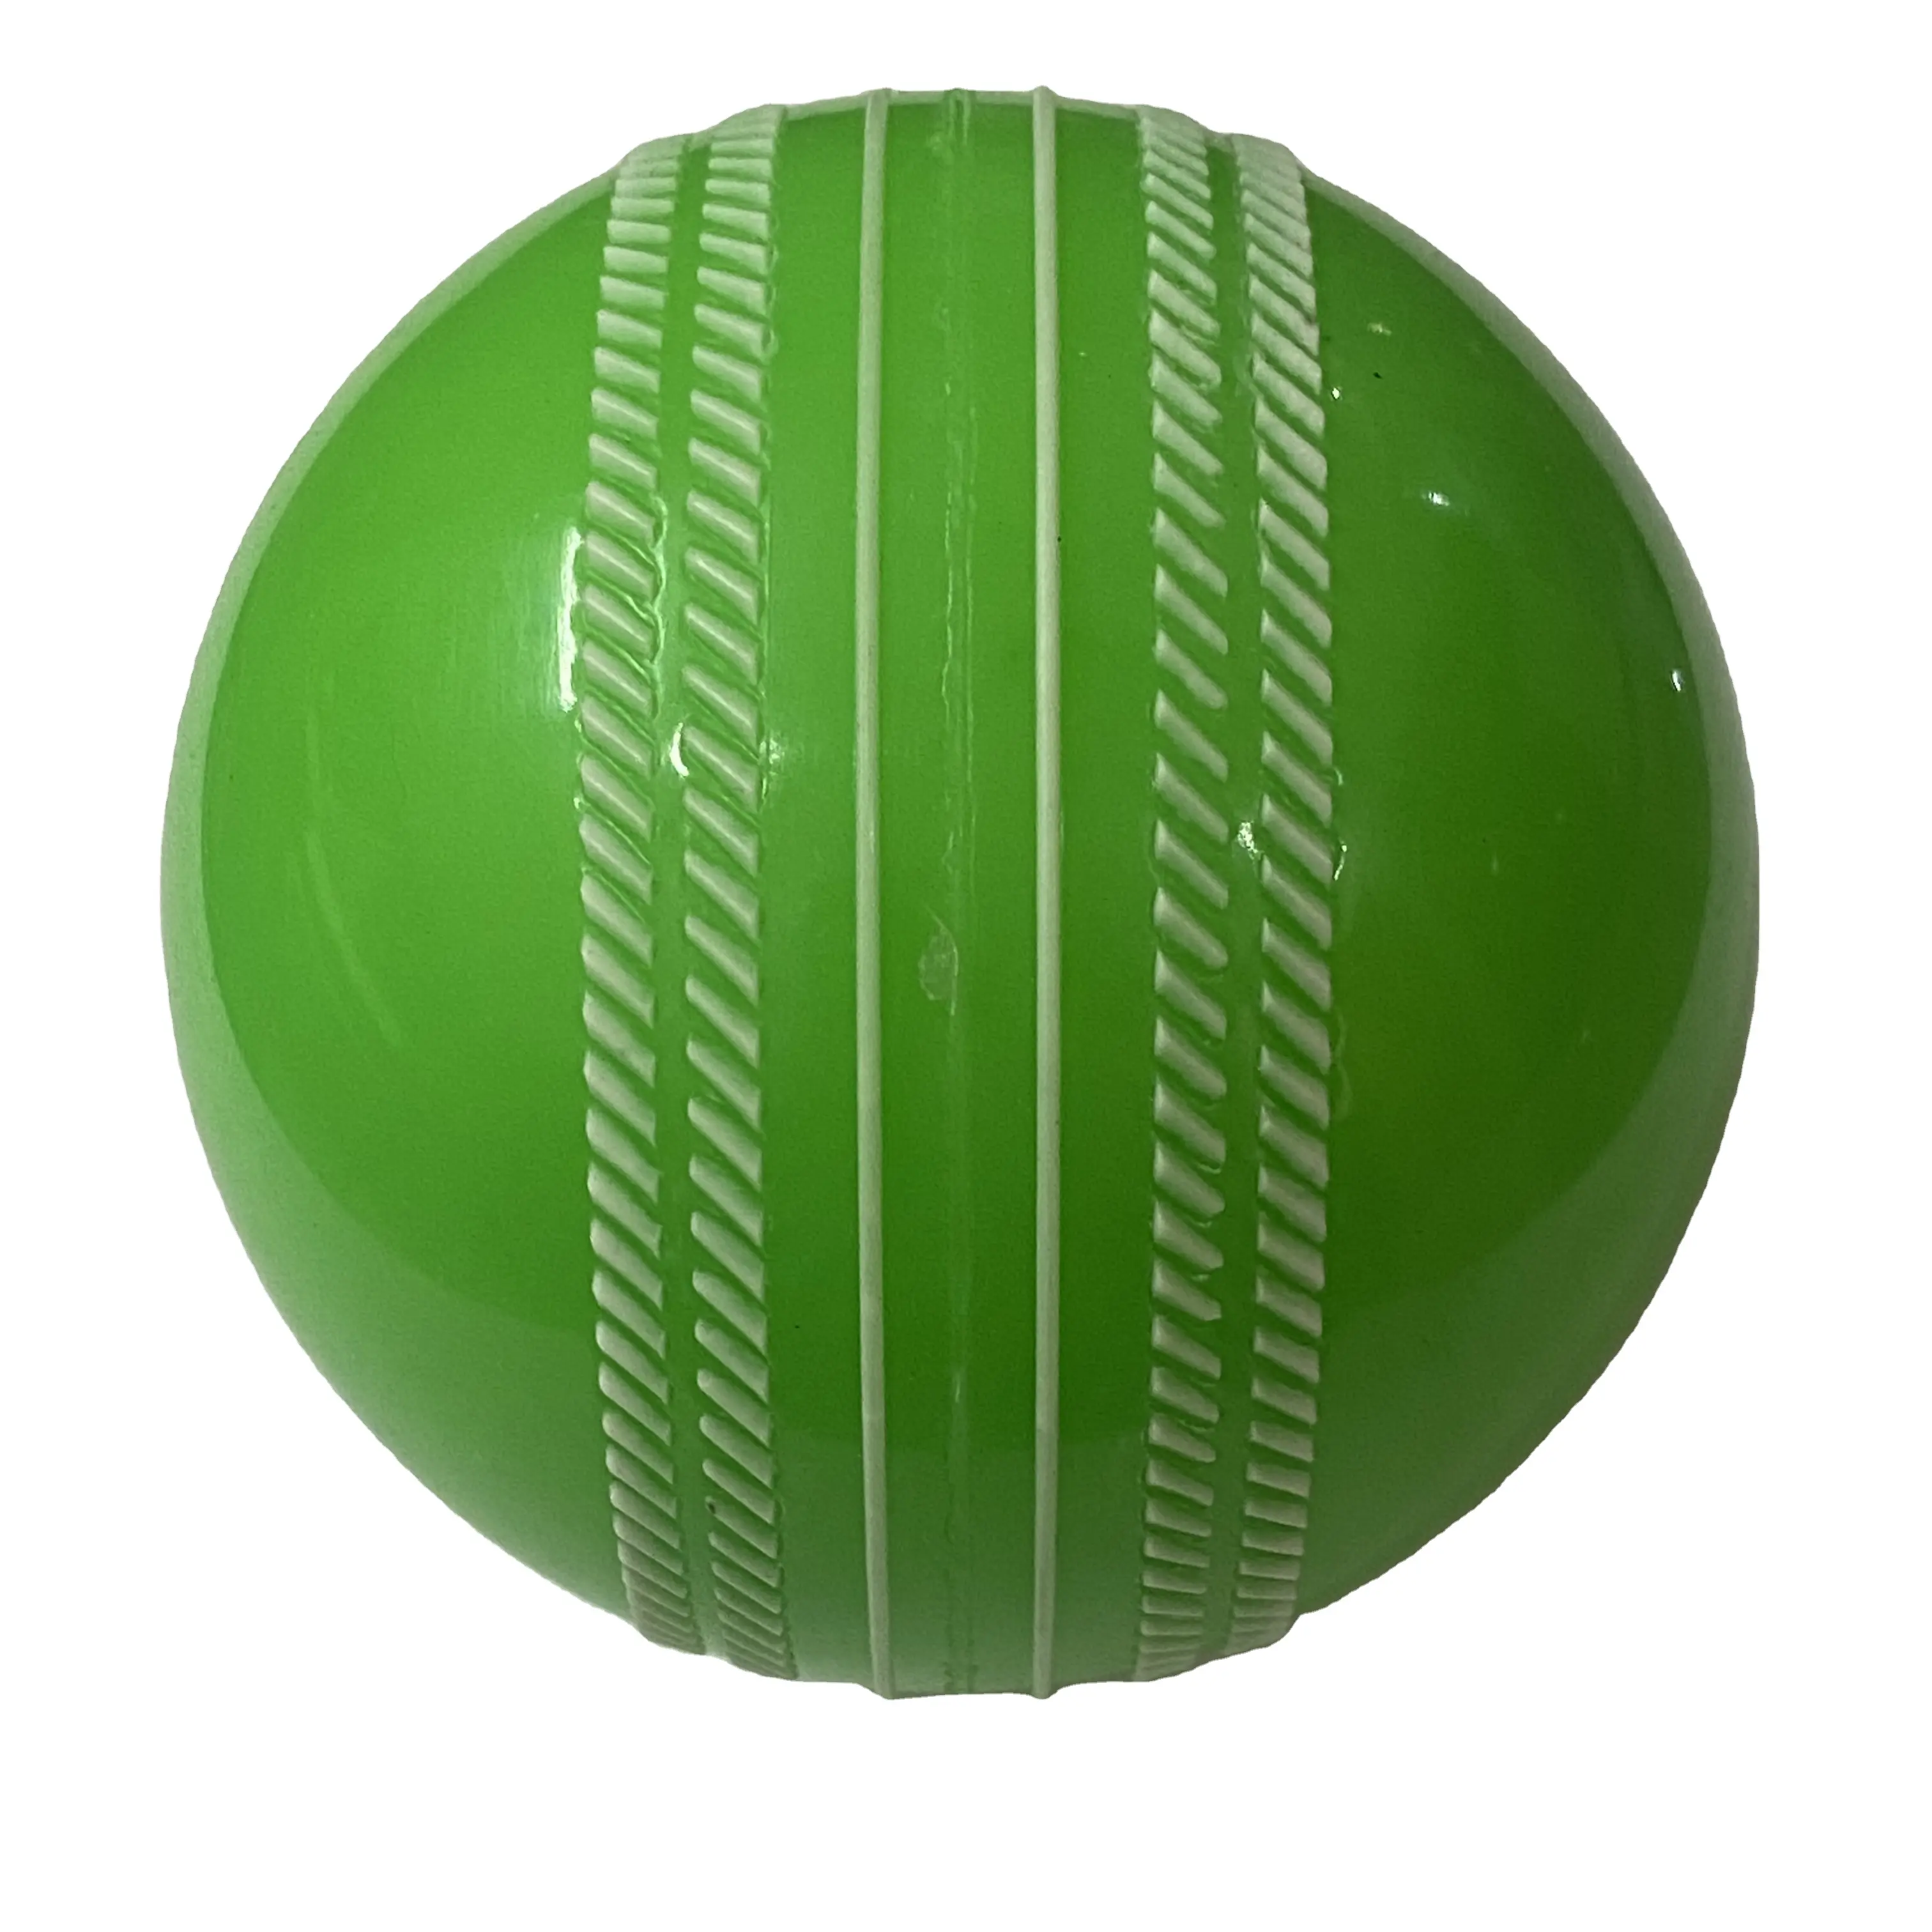 Aas Premium Kwaliteit Cricket I10 Bal Voor Indoor & Outdoor Play Lage Bounce (Niet Een Harde Bal)